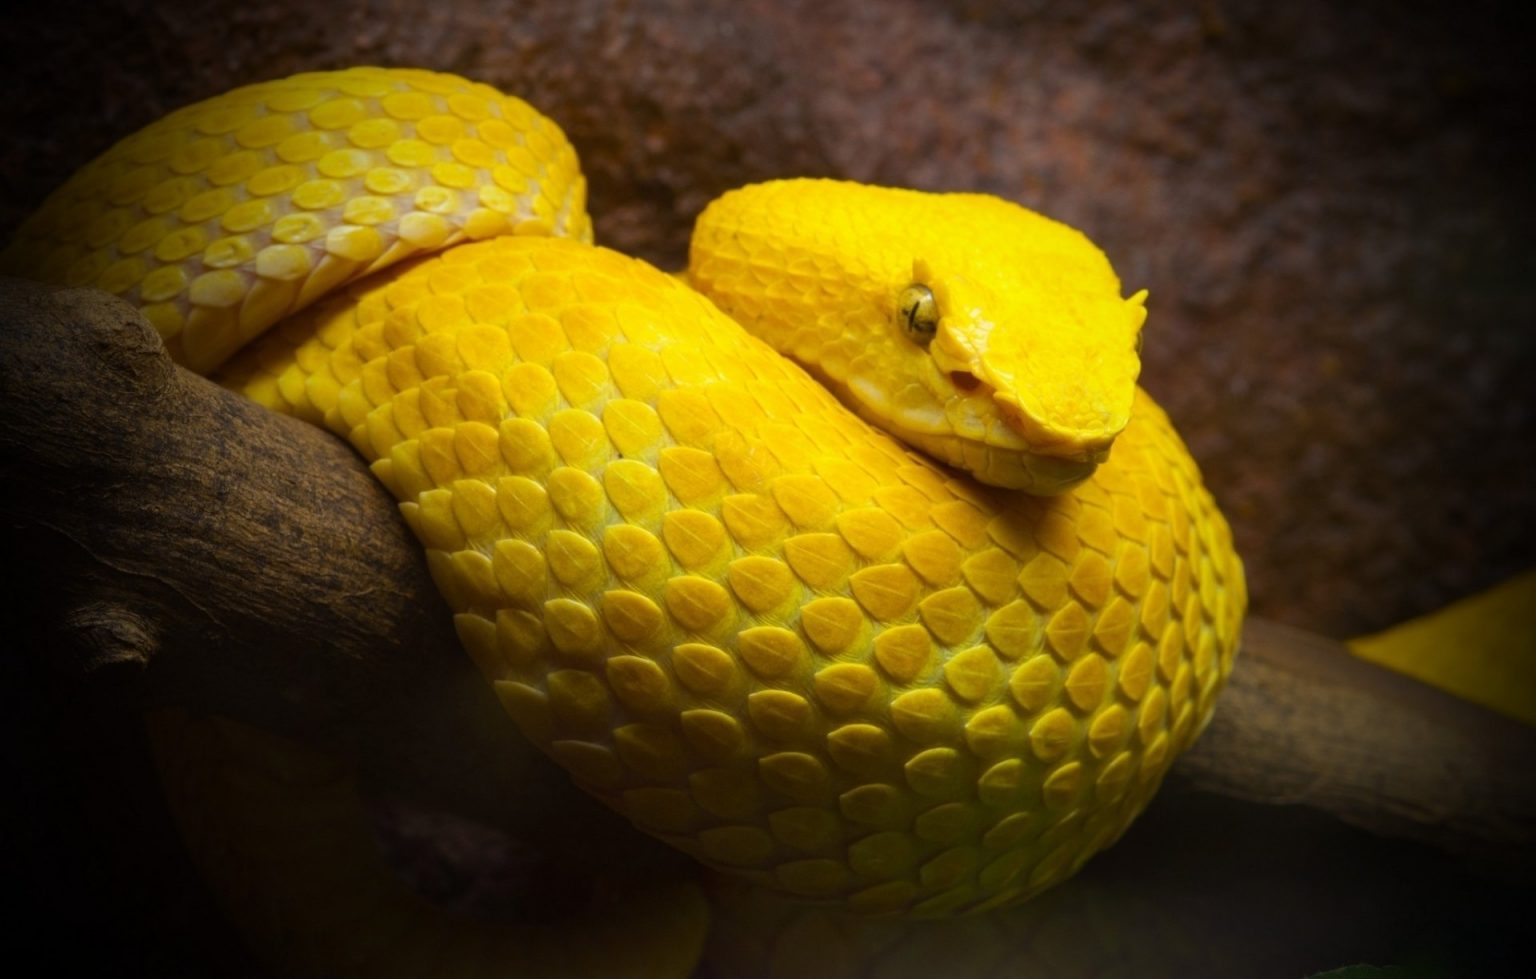 Tổng hợp hình ảnh về loài rắn đẹp nhất - [Kích thước hình ảnh: 1536x979 px]